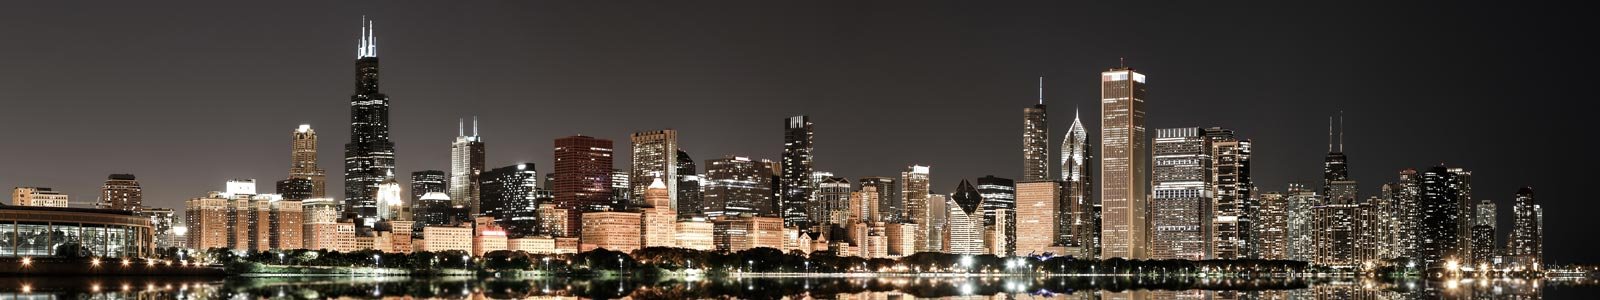 №1422 - Ночной Чикаго, огни города